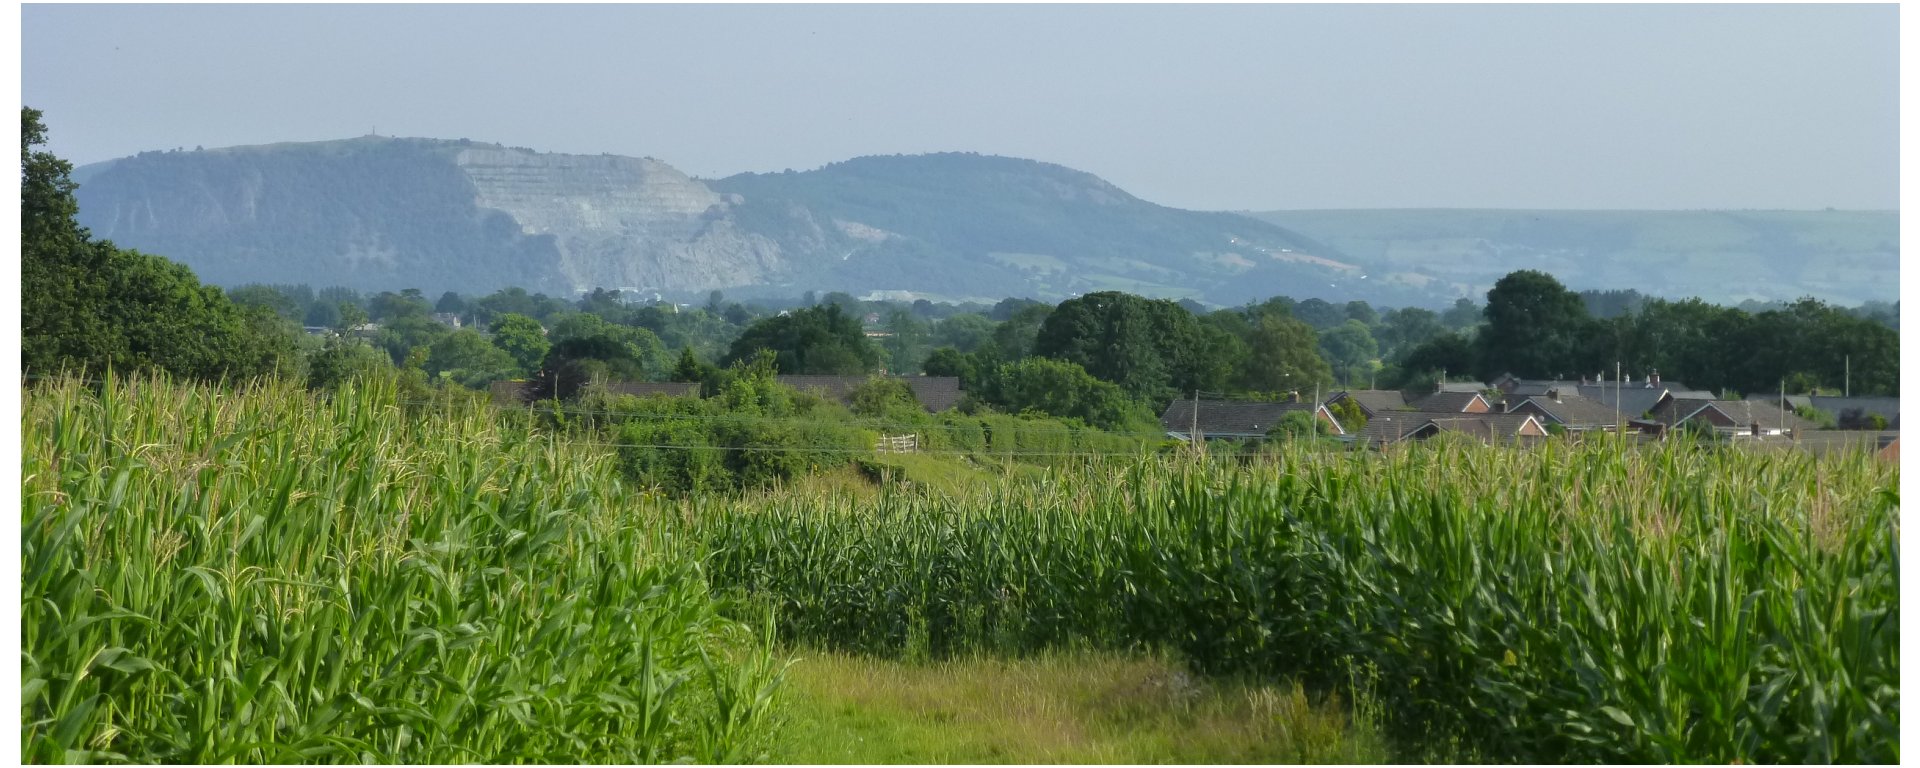 The Breidden hills viewed from a path through a maize field